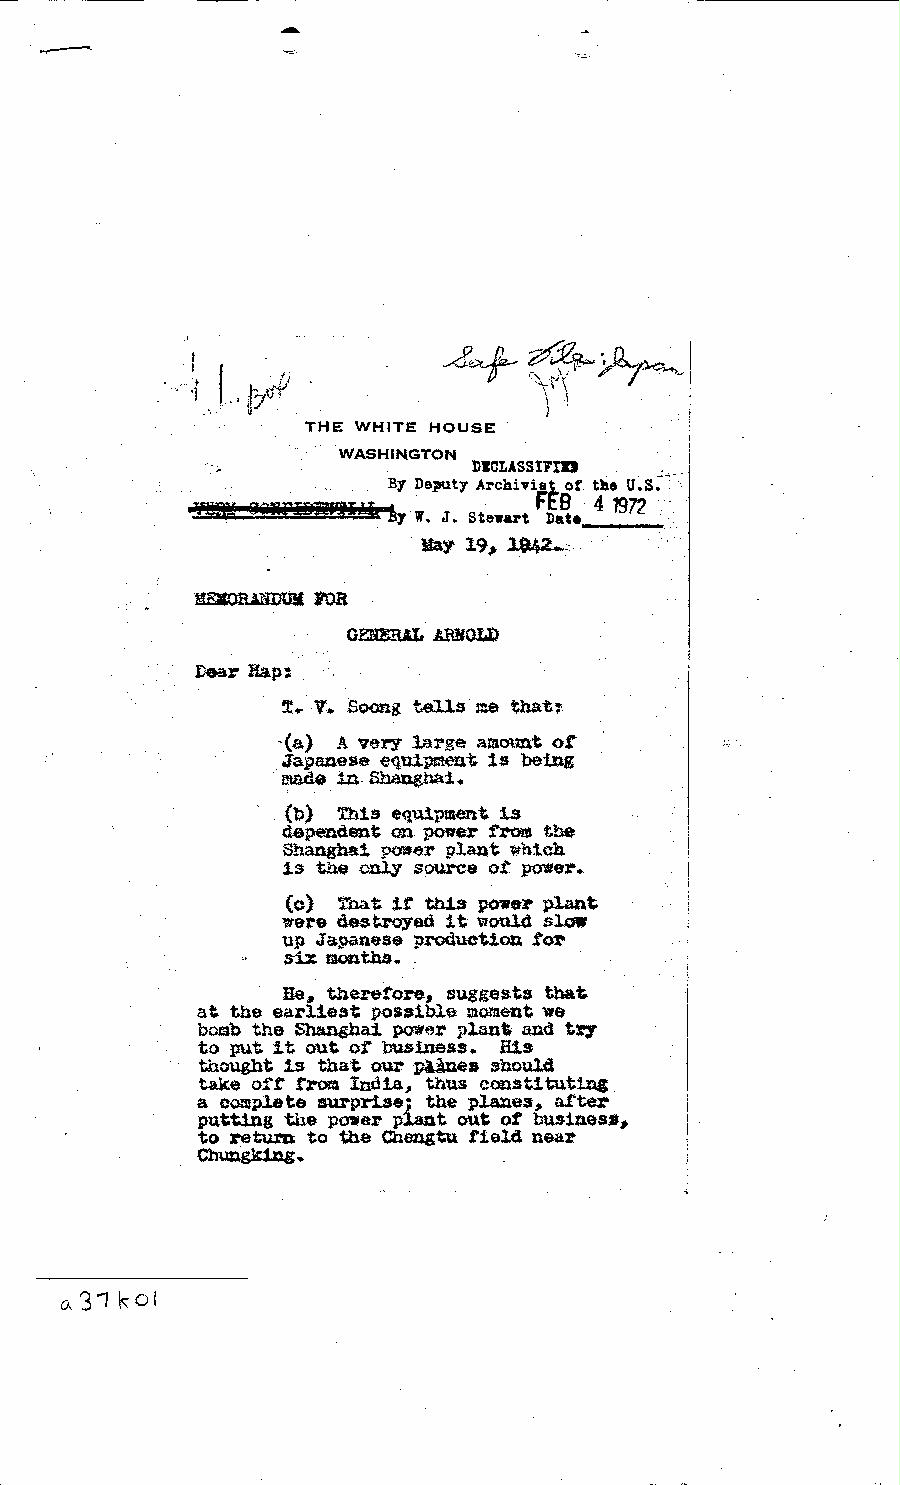 [a37k01.jpg] - Memorandum-FDR-->General Arnold-May 19, 1942